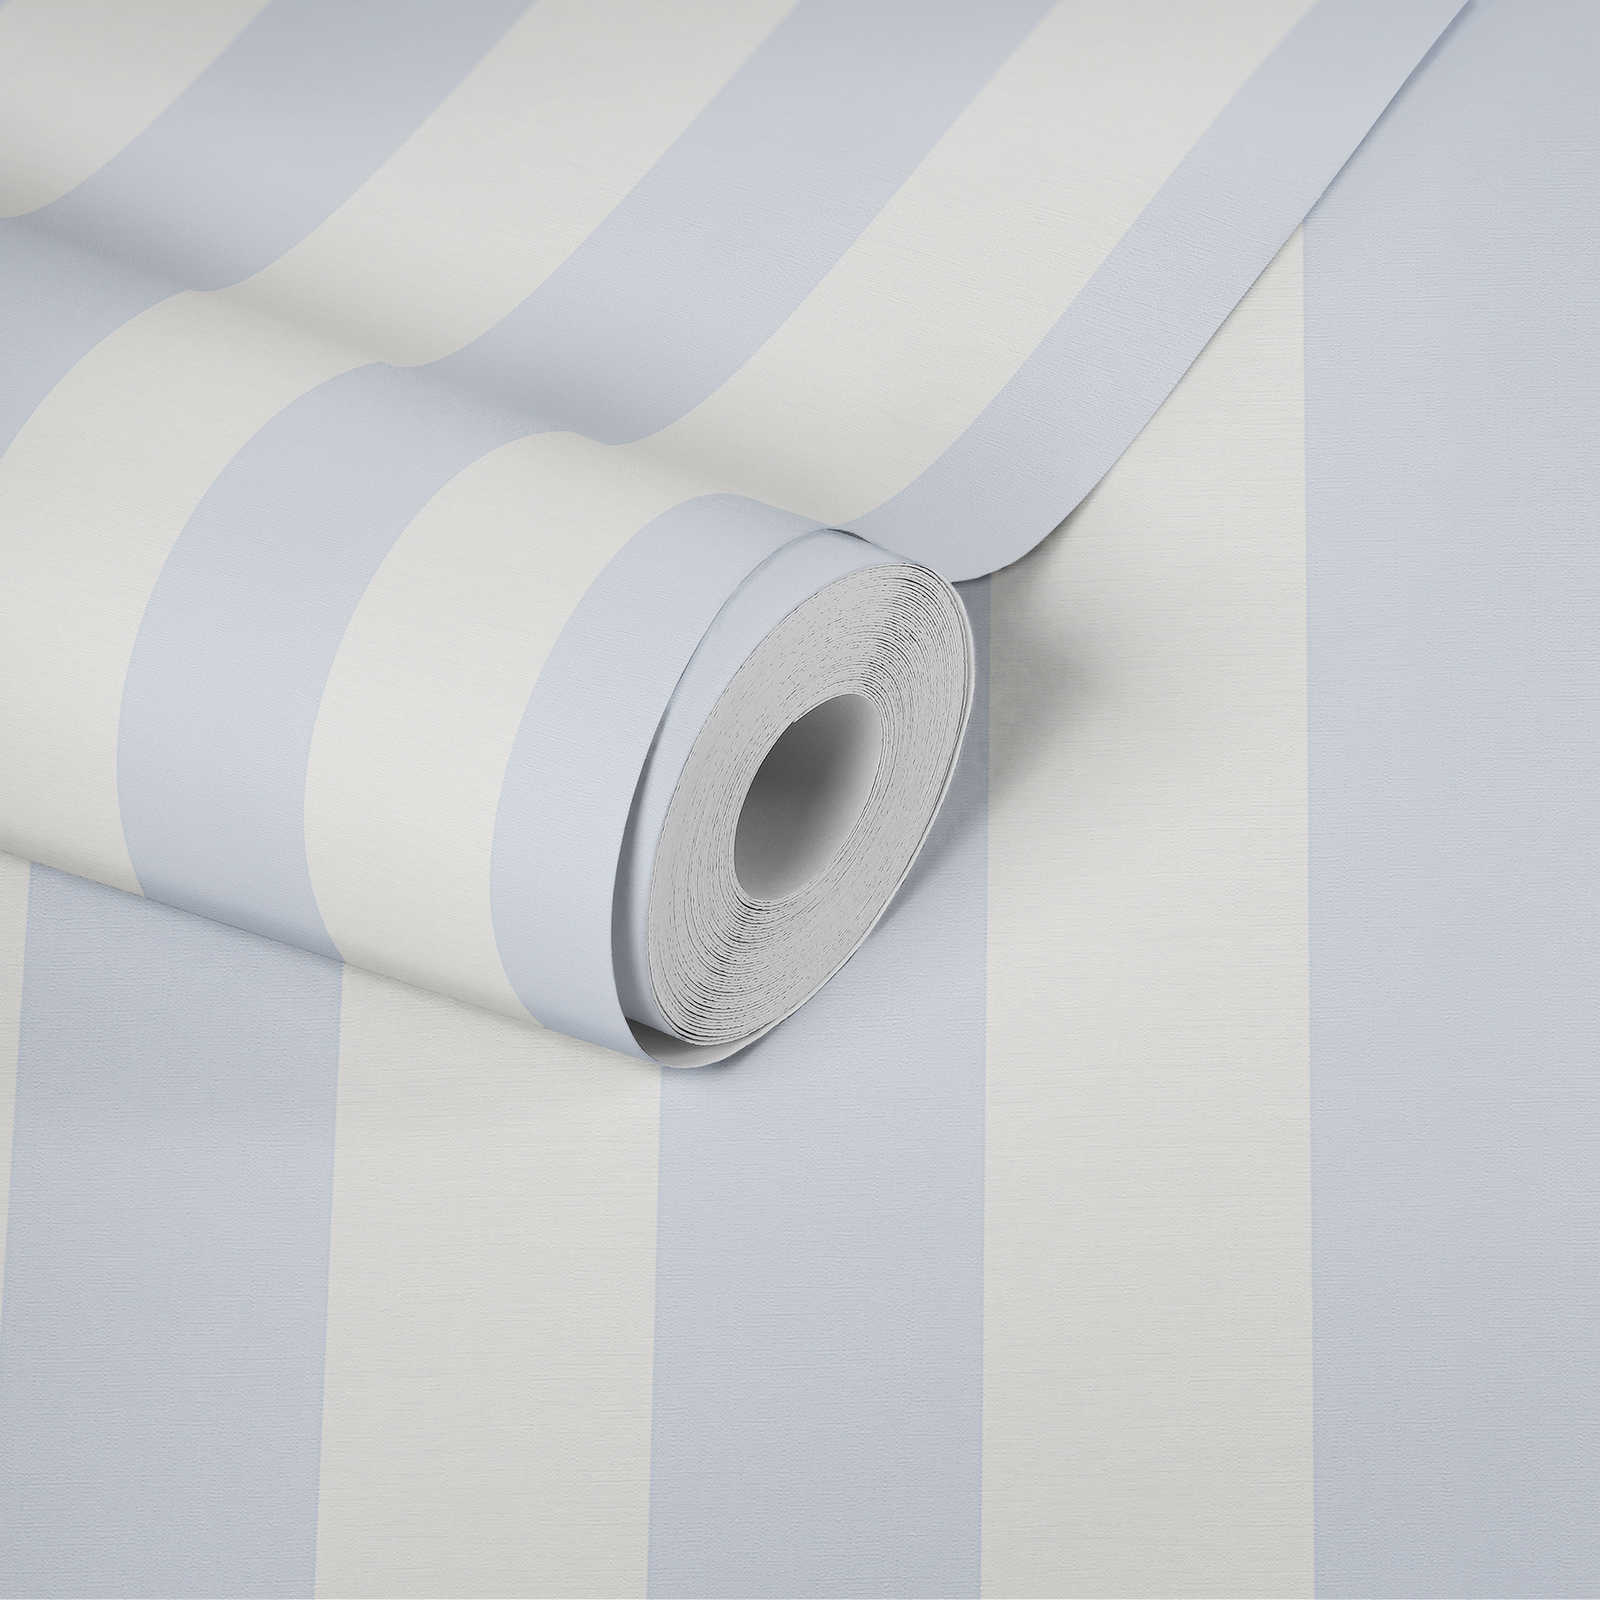             Blockstreifen-Tapete mit Textil-Look für junges Design – Blau, Weiß
        